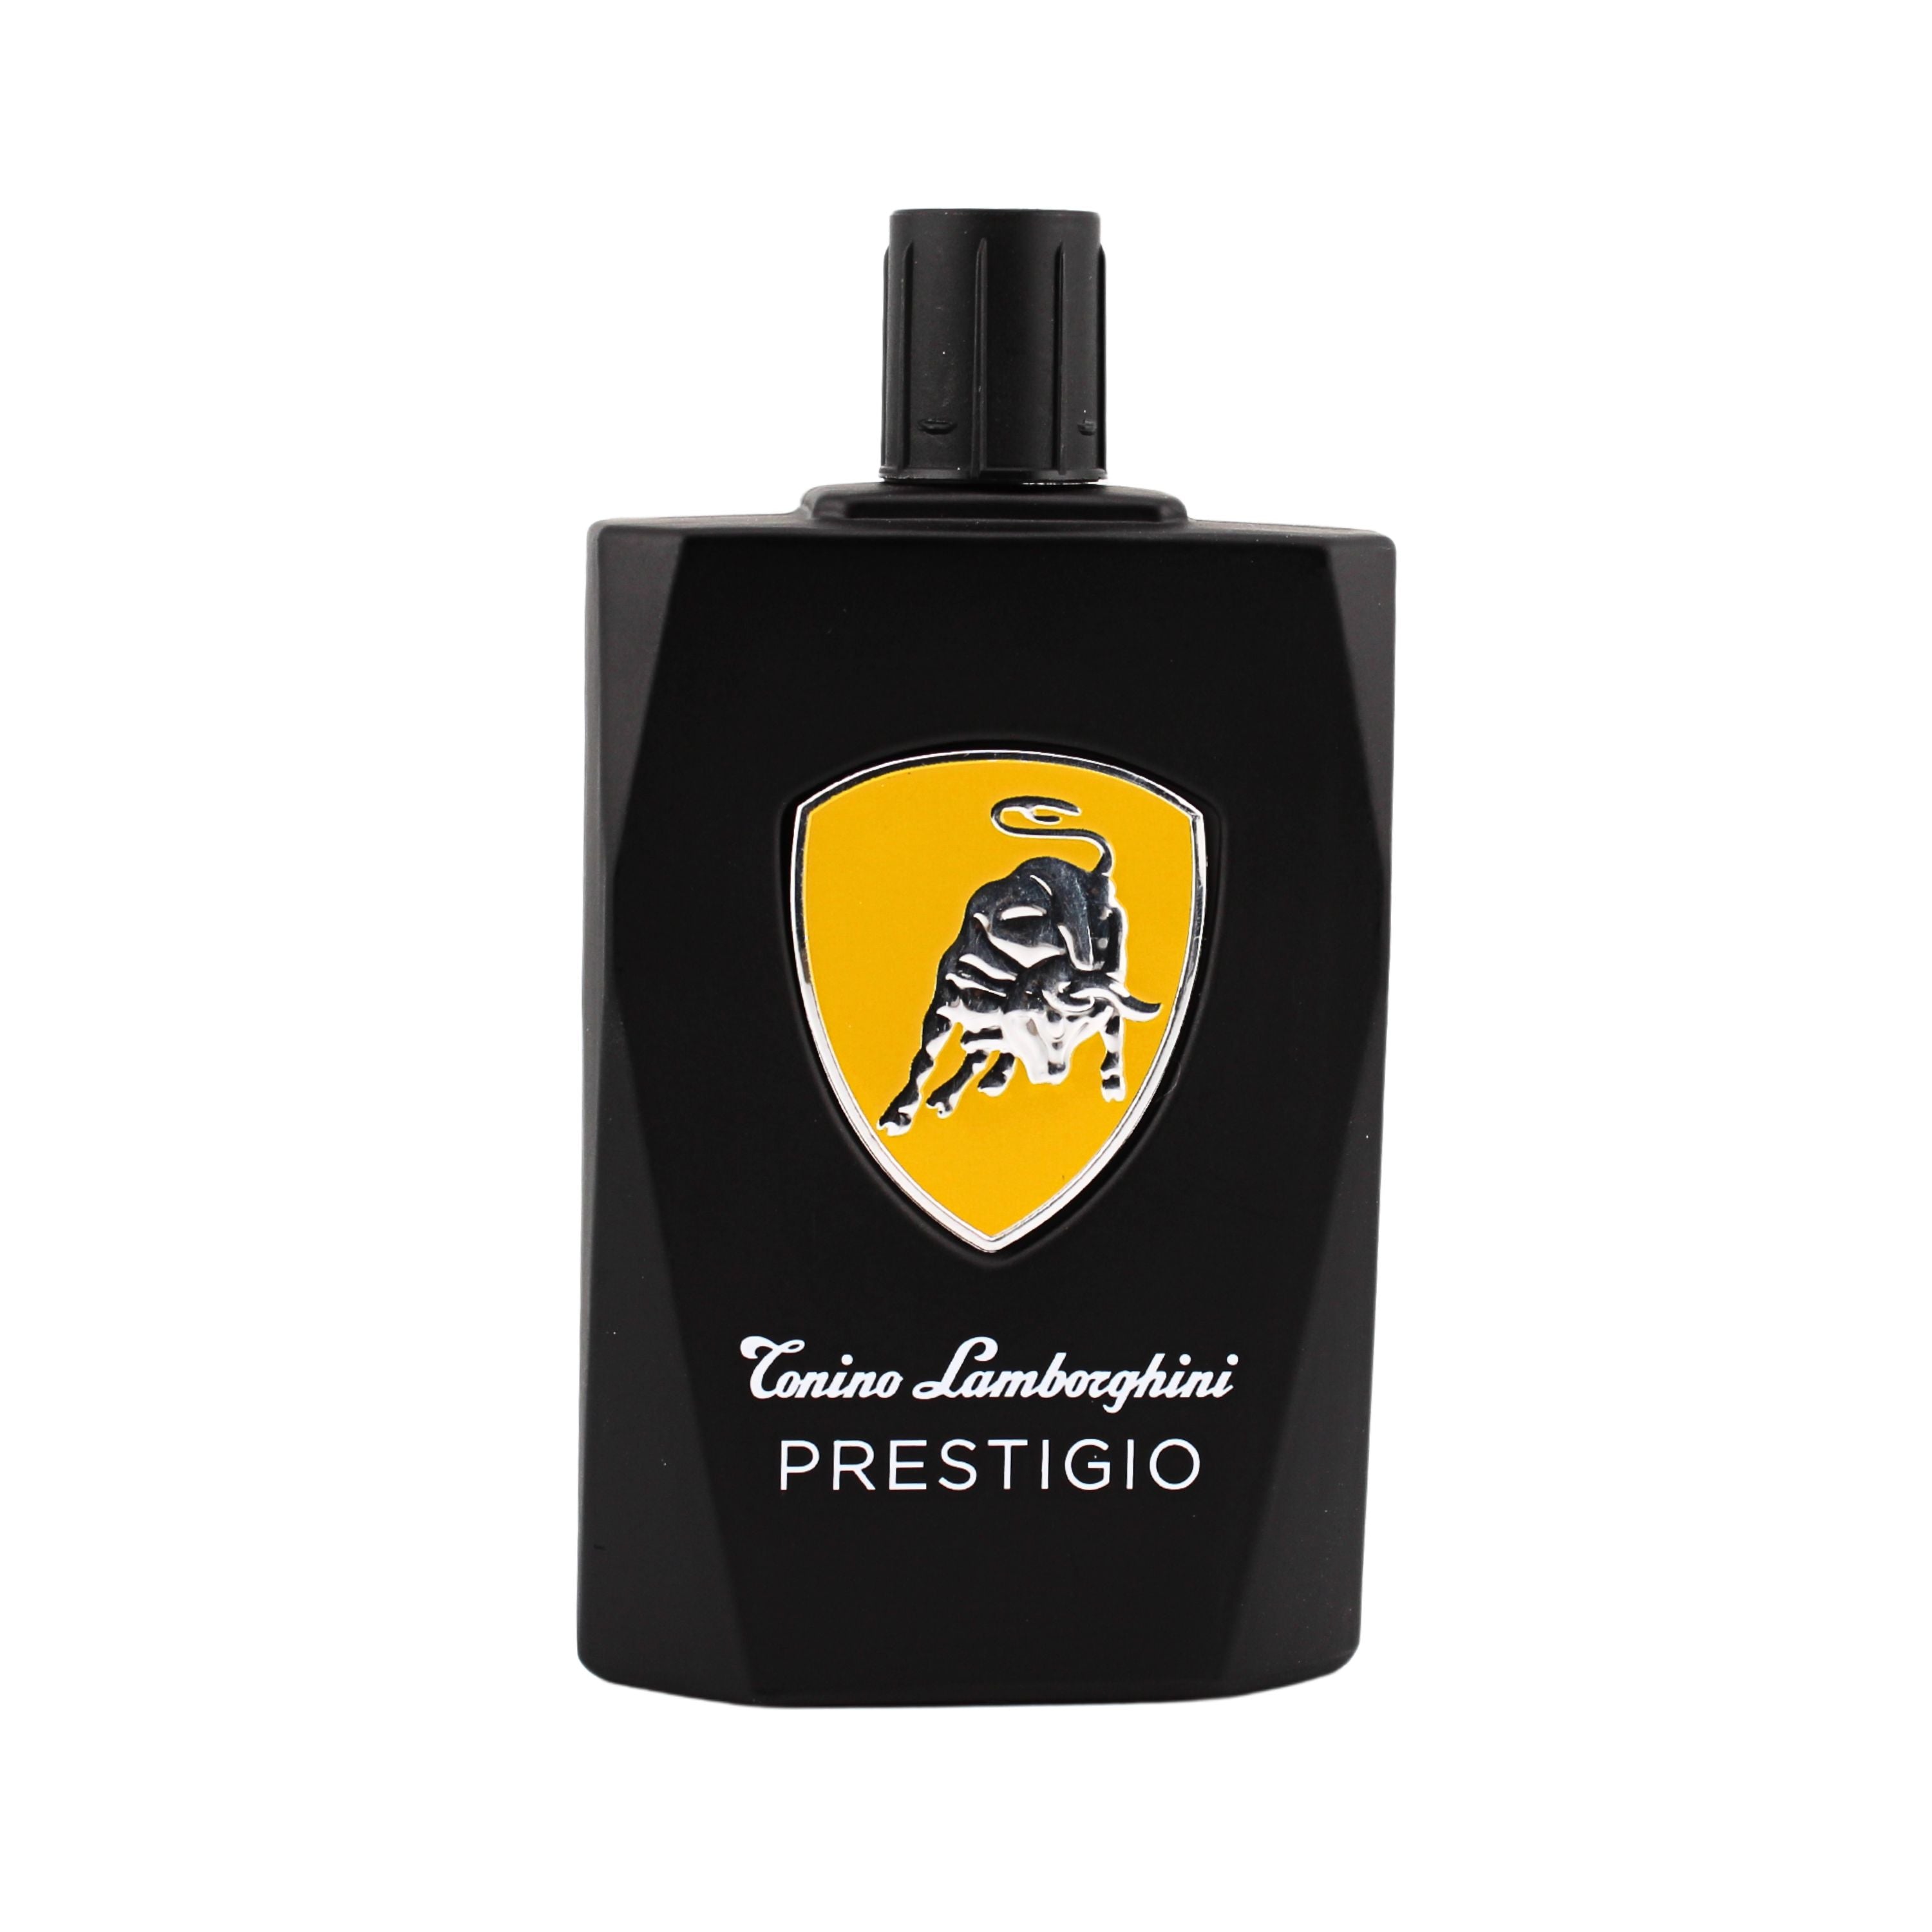 Tonino Lamborghini Prestigio Eau de Toilette for Men